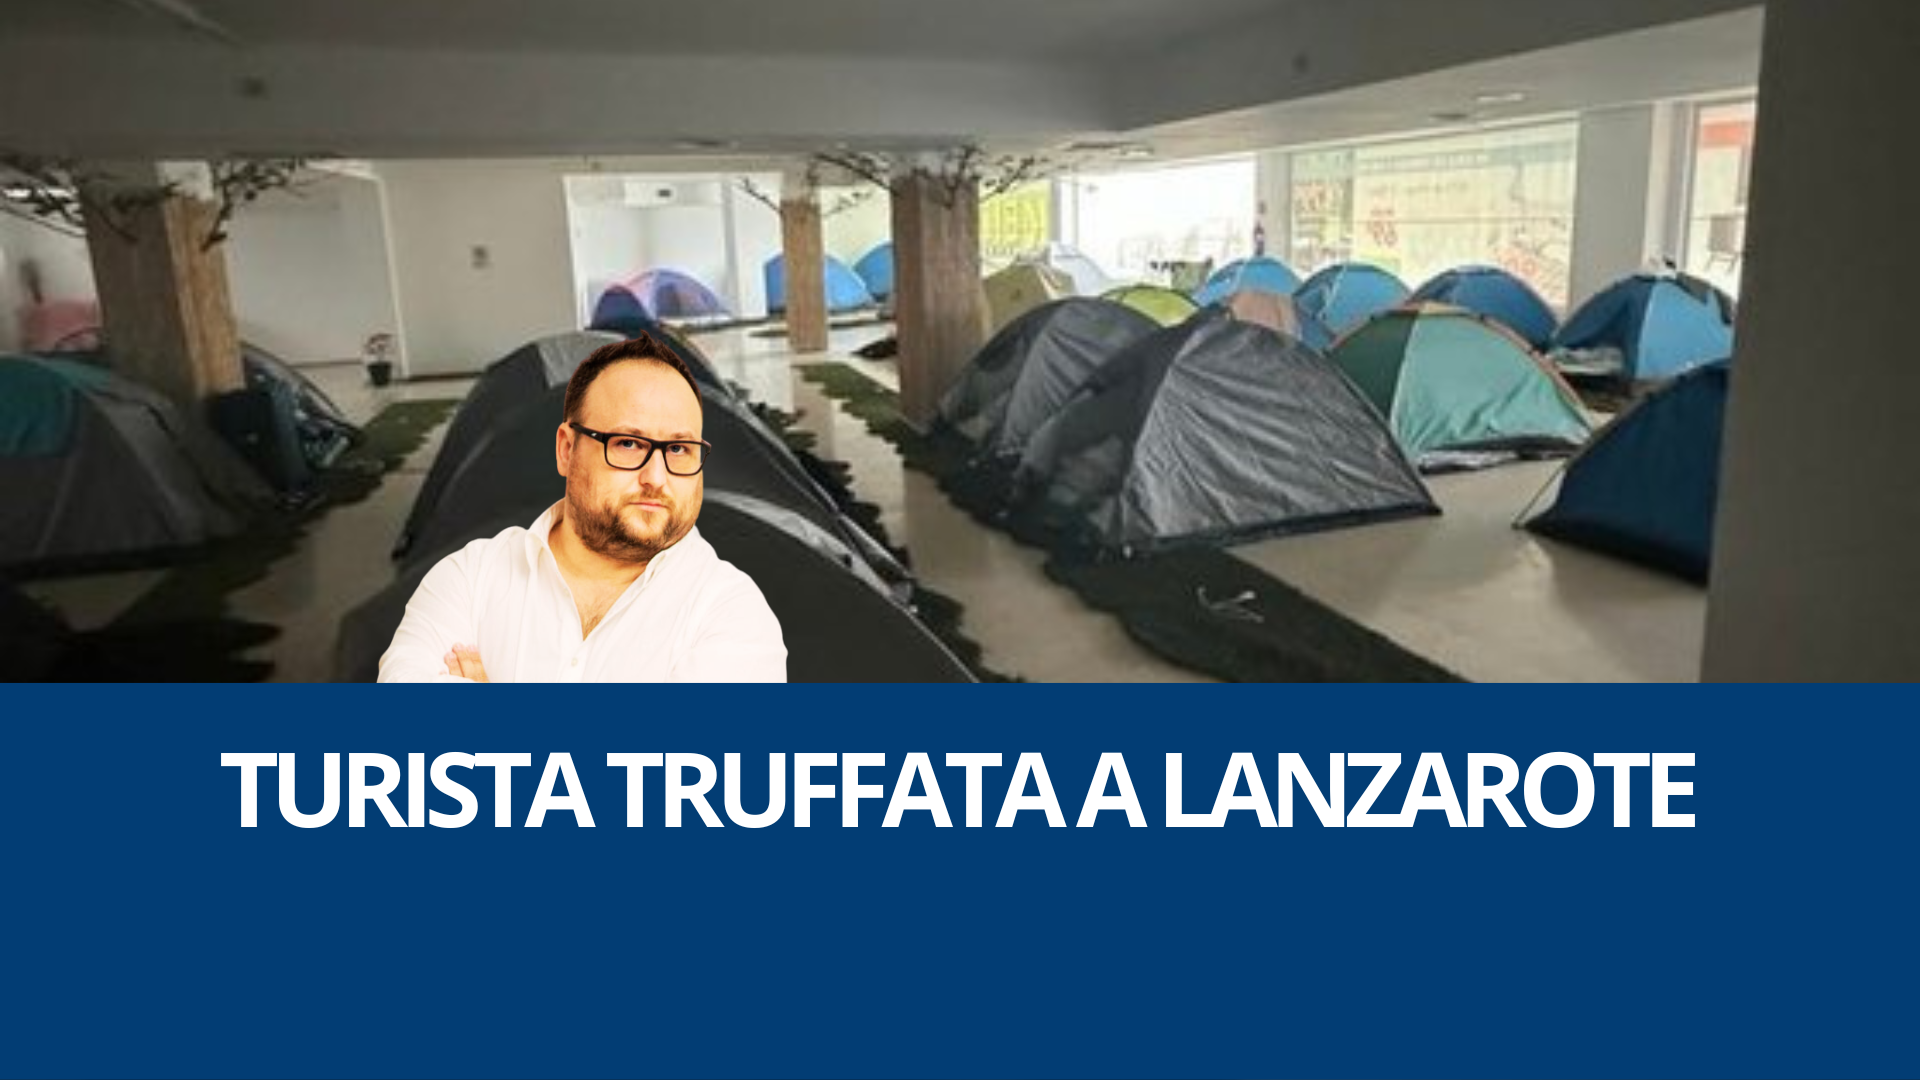 Turista truffata a Lanzarote: la casa vacanze era una tenda da camping